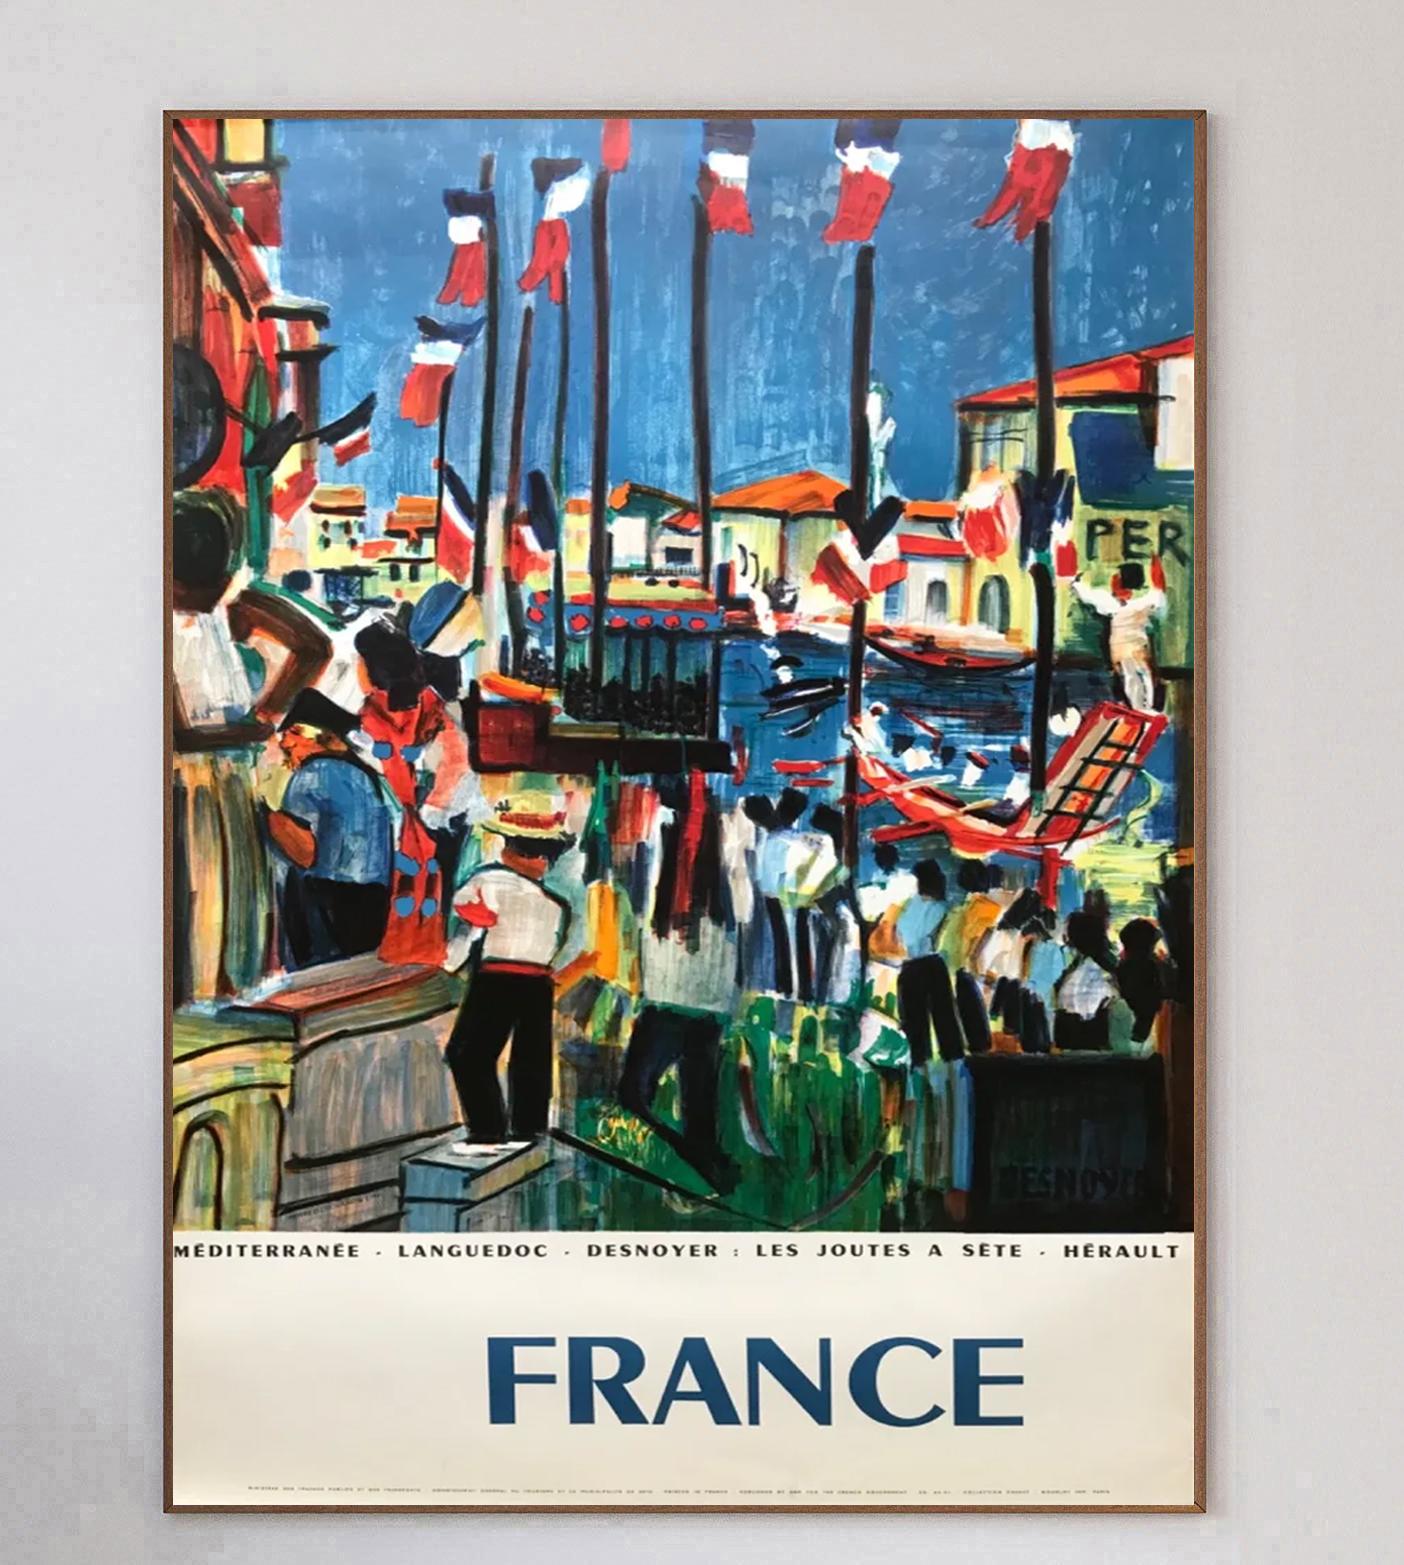 Il s'agit d'une magnifique illustration du peintre français François Desnoyer, qui dépeint les célébrations dans les rues et sur les rivières de France à l'occasion de ce qui est vraisemblablement le jour de la Bastille. Le design vibrant reprend